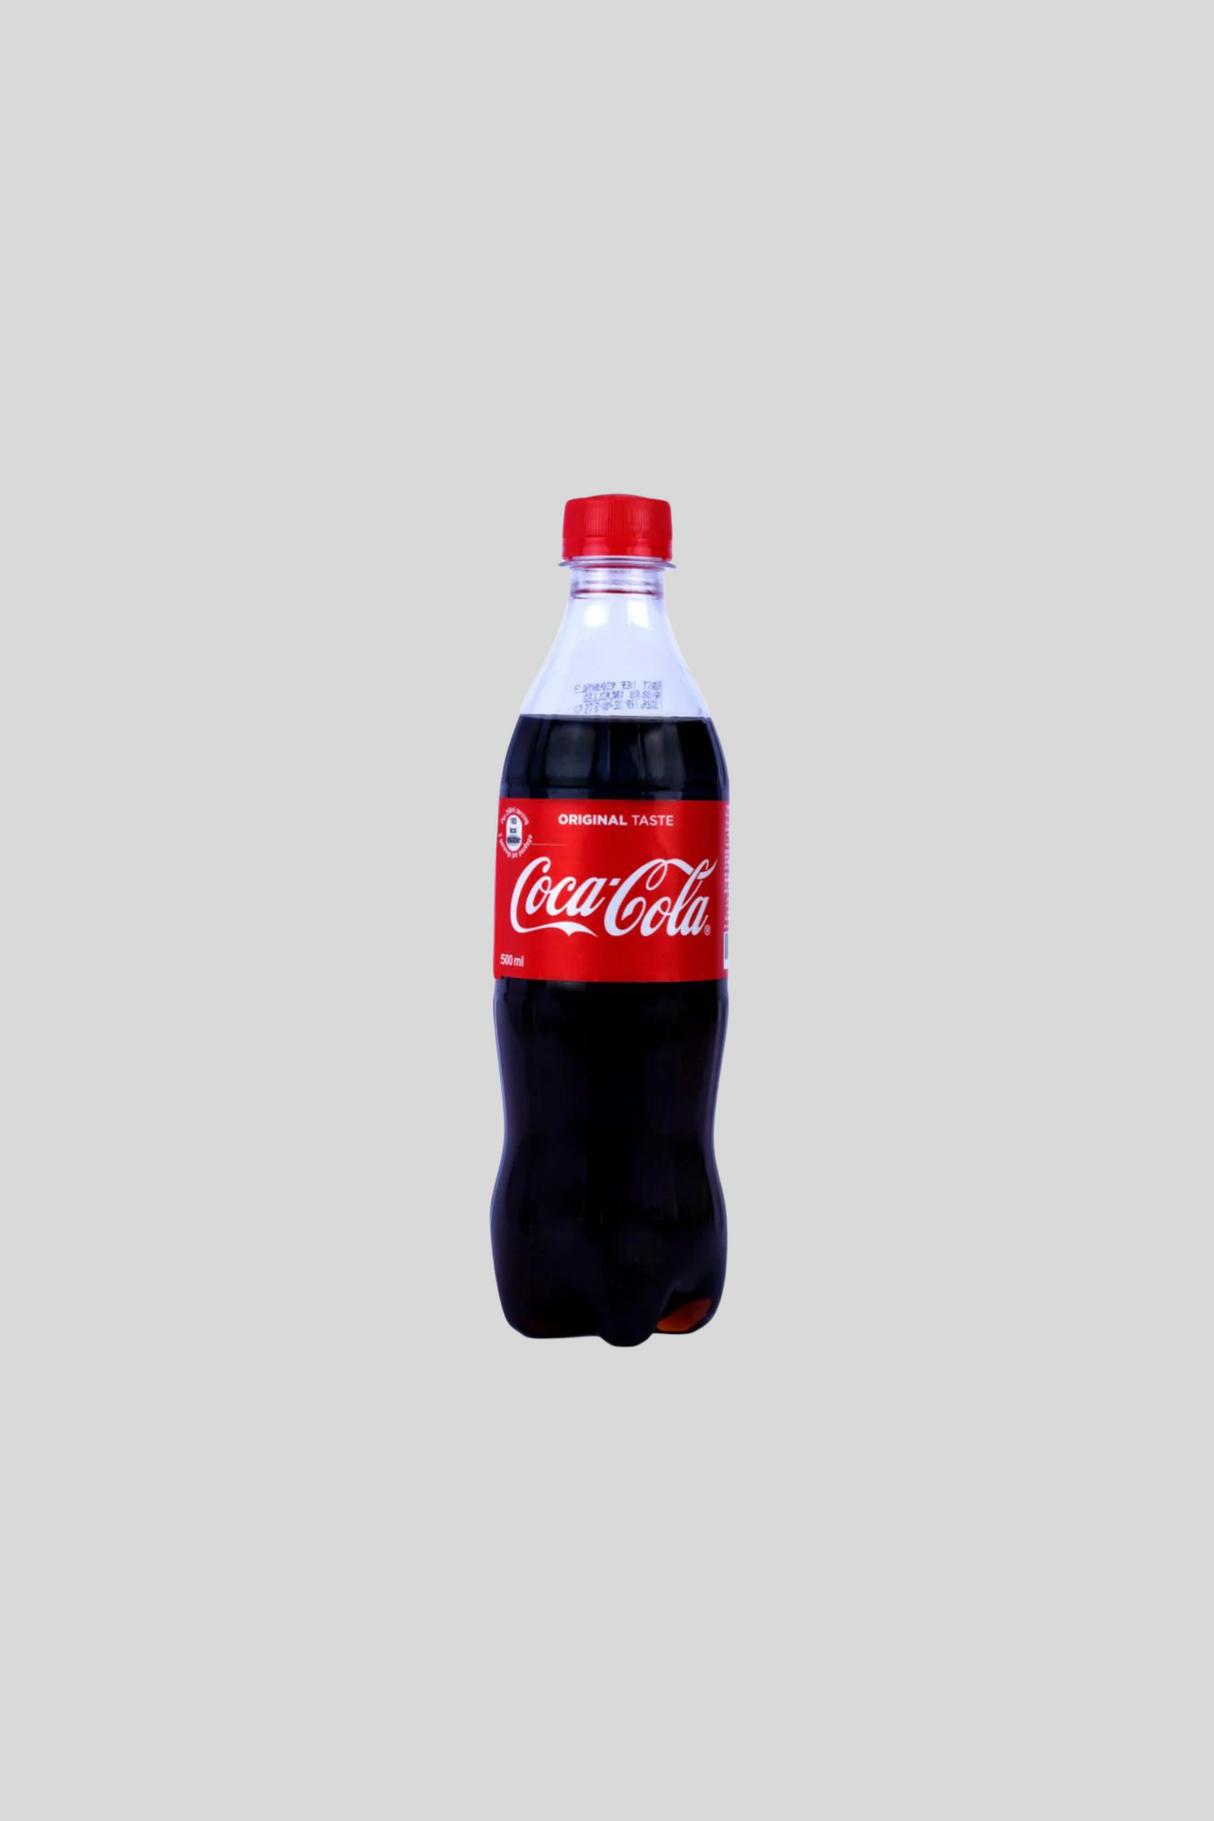 coke 500ml